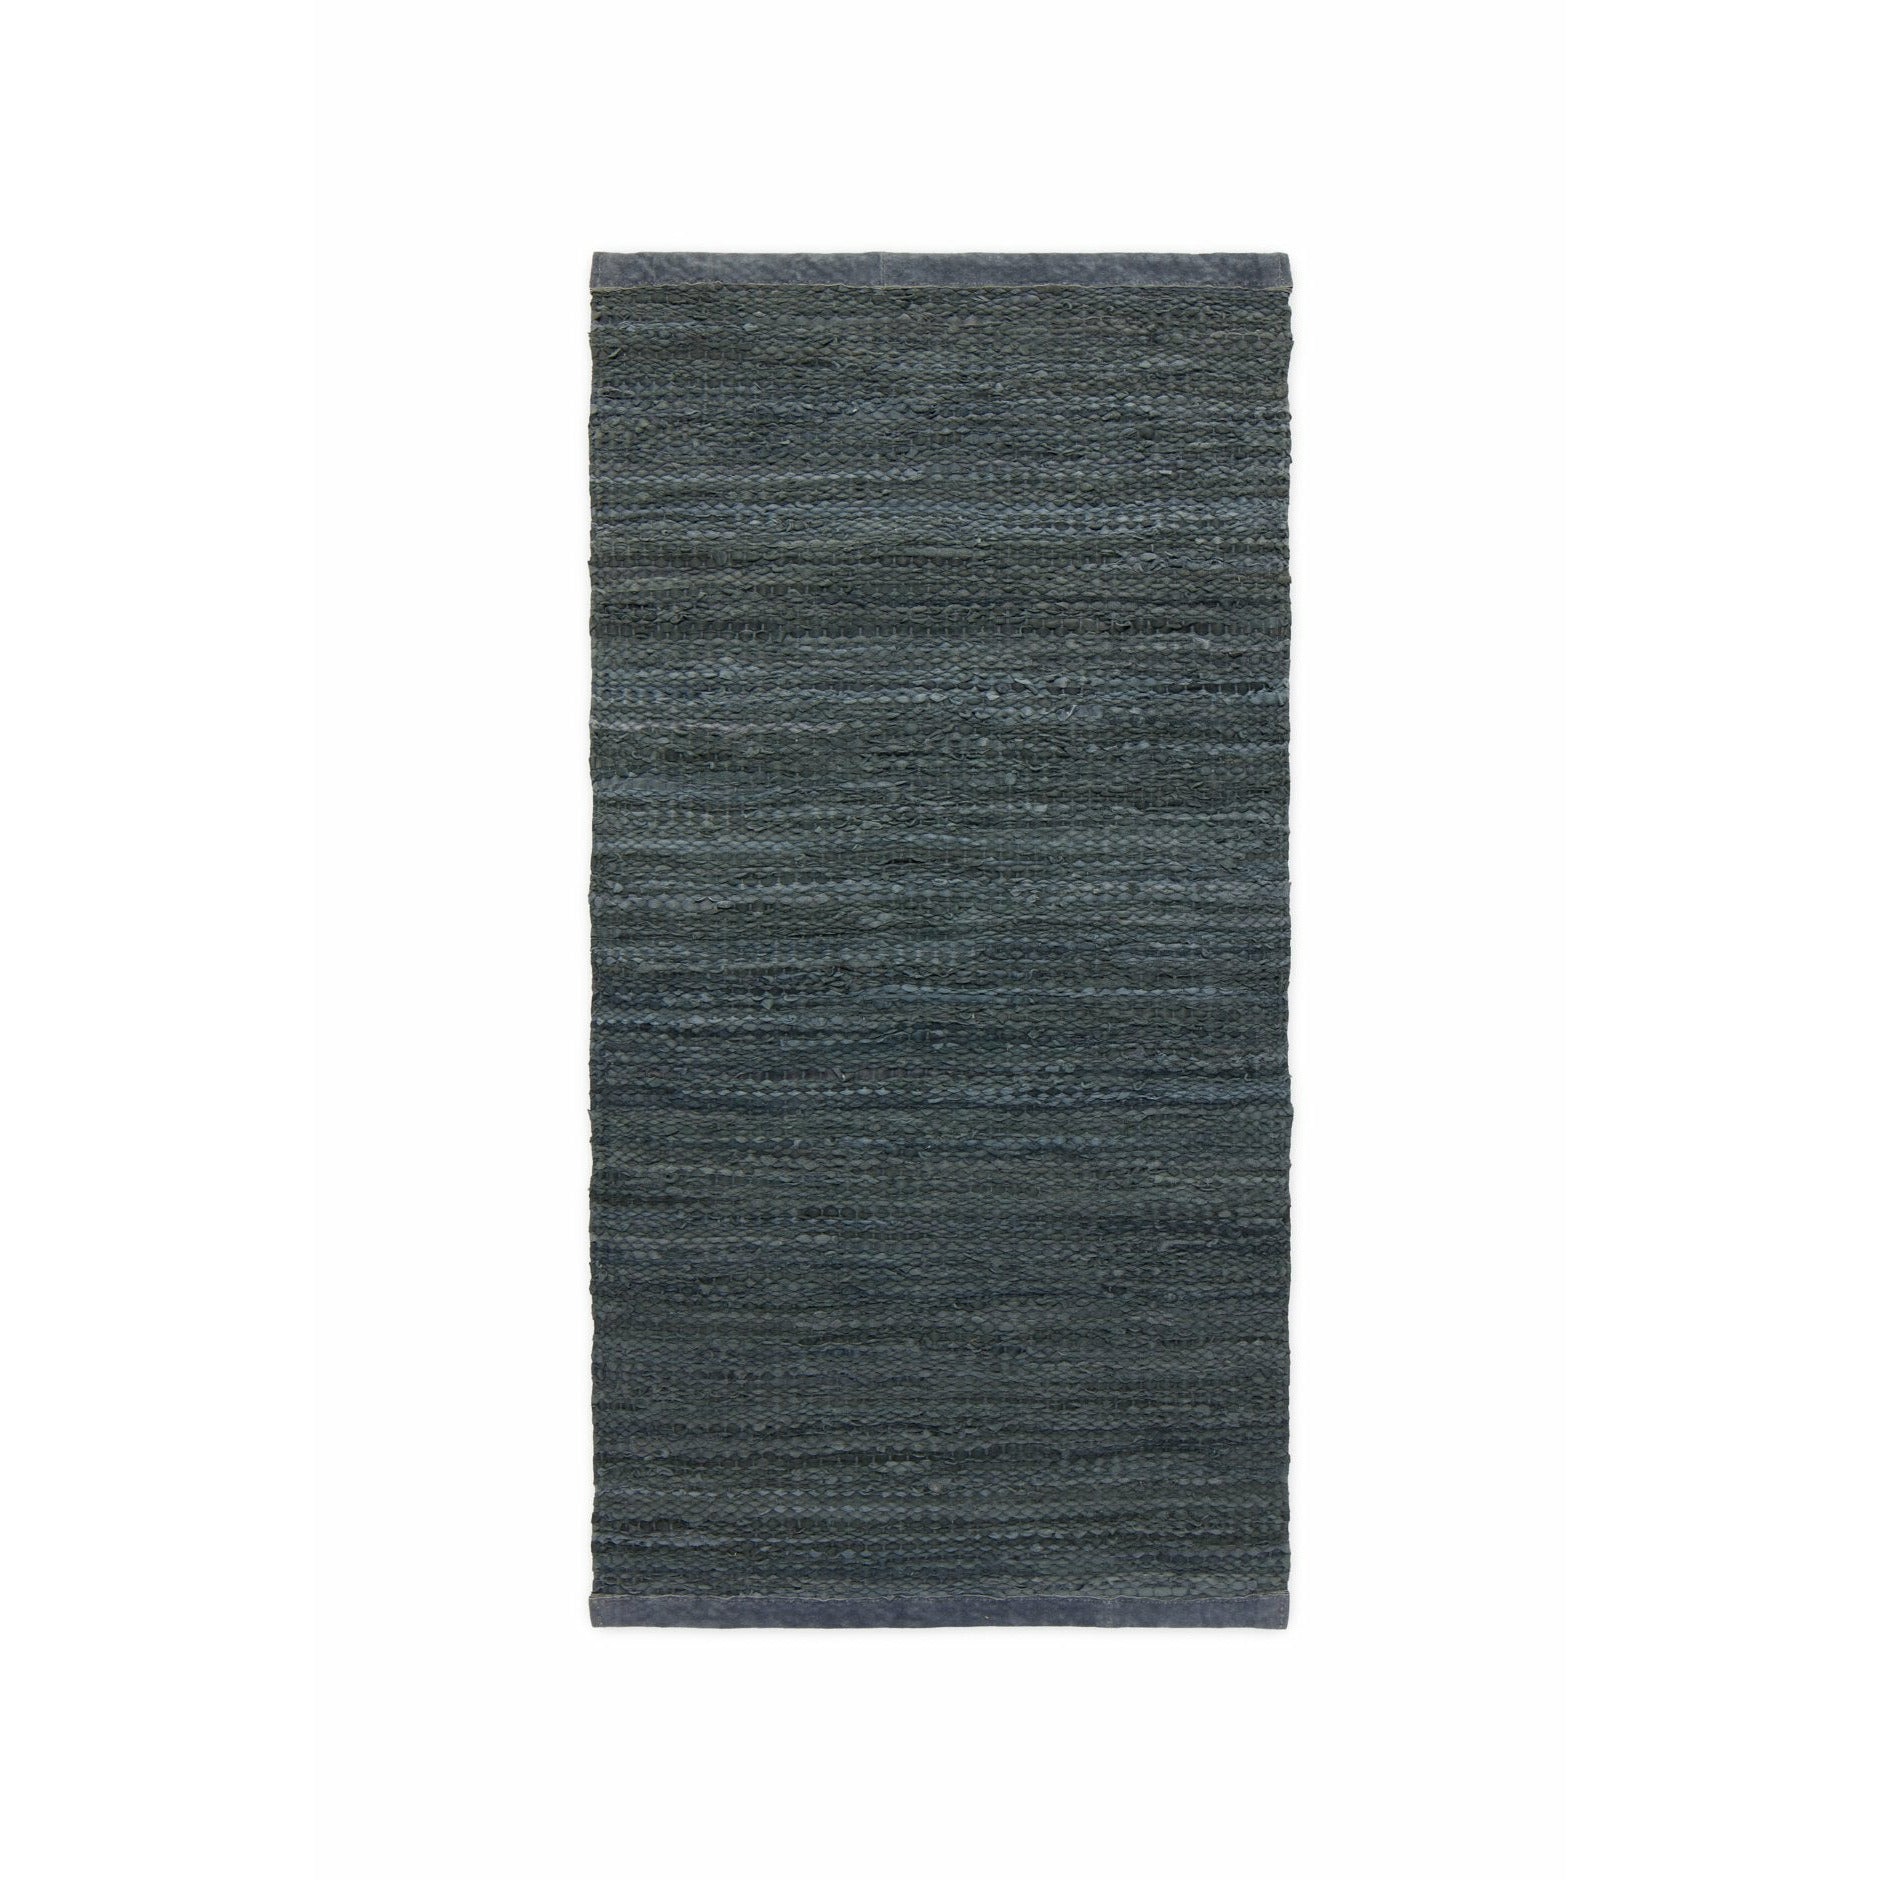 Rug Solid Leather Tæppe Dark Grey, 200 x 300 cm